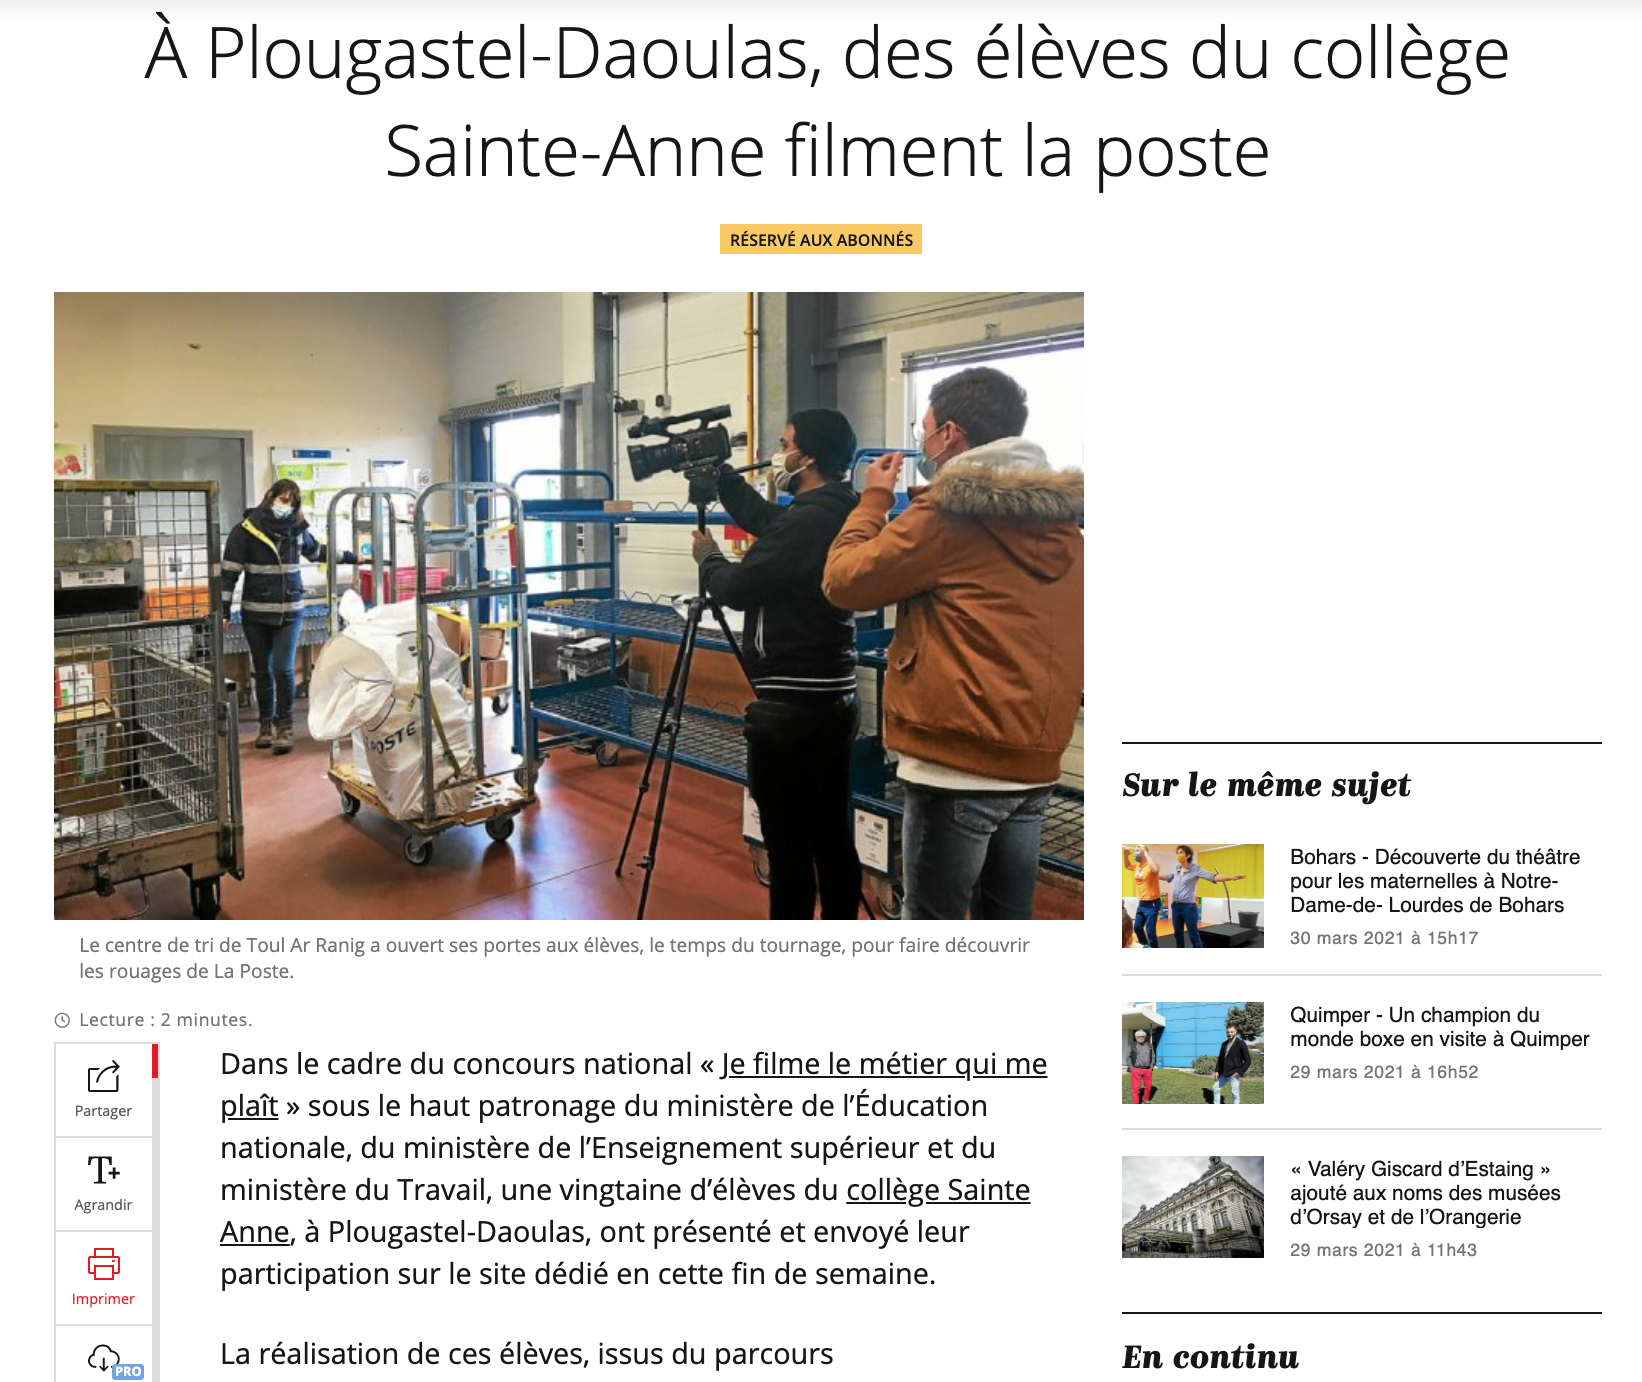 À Plougastel-Daoulas, des élèves du collège Sainte-Anne filment la poste